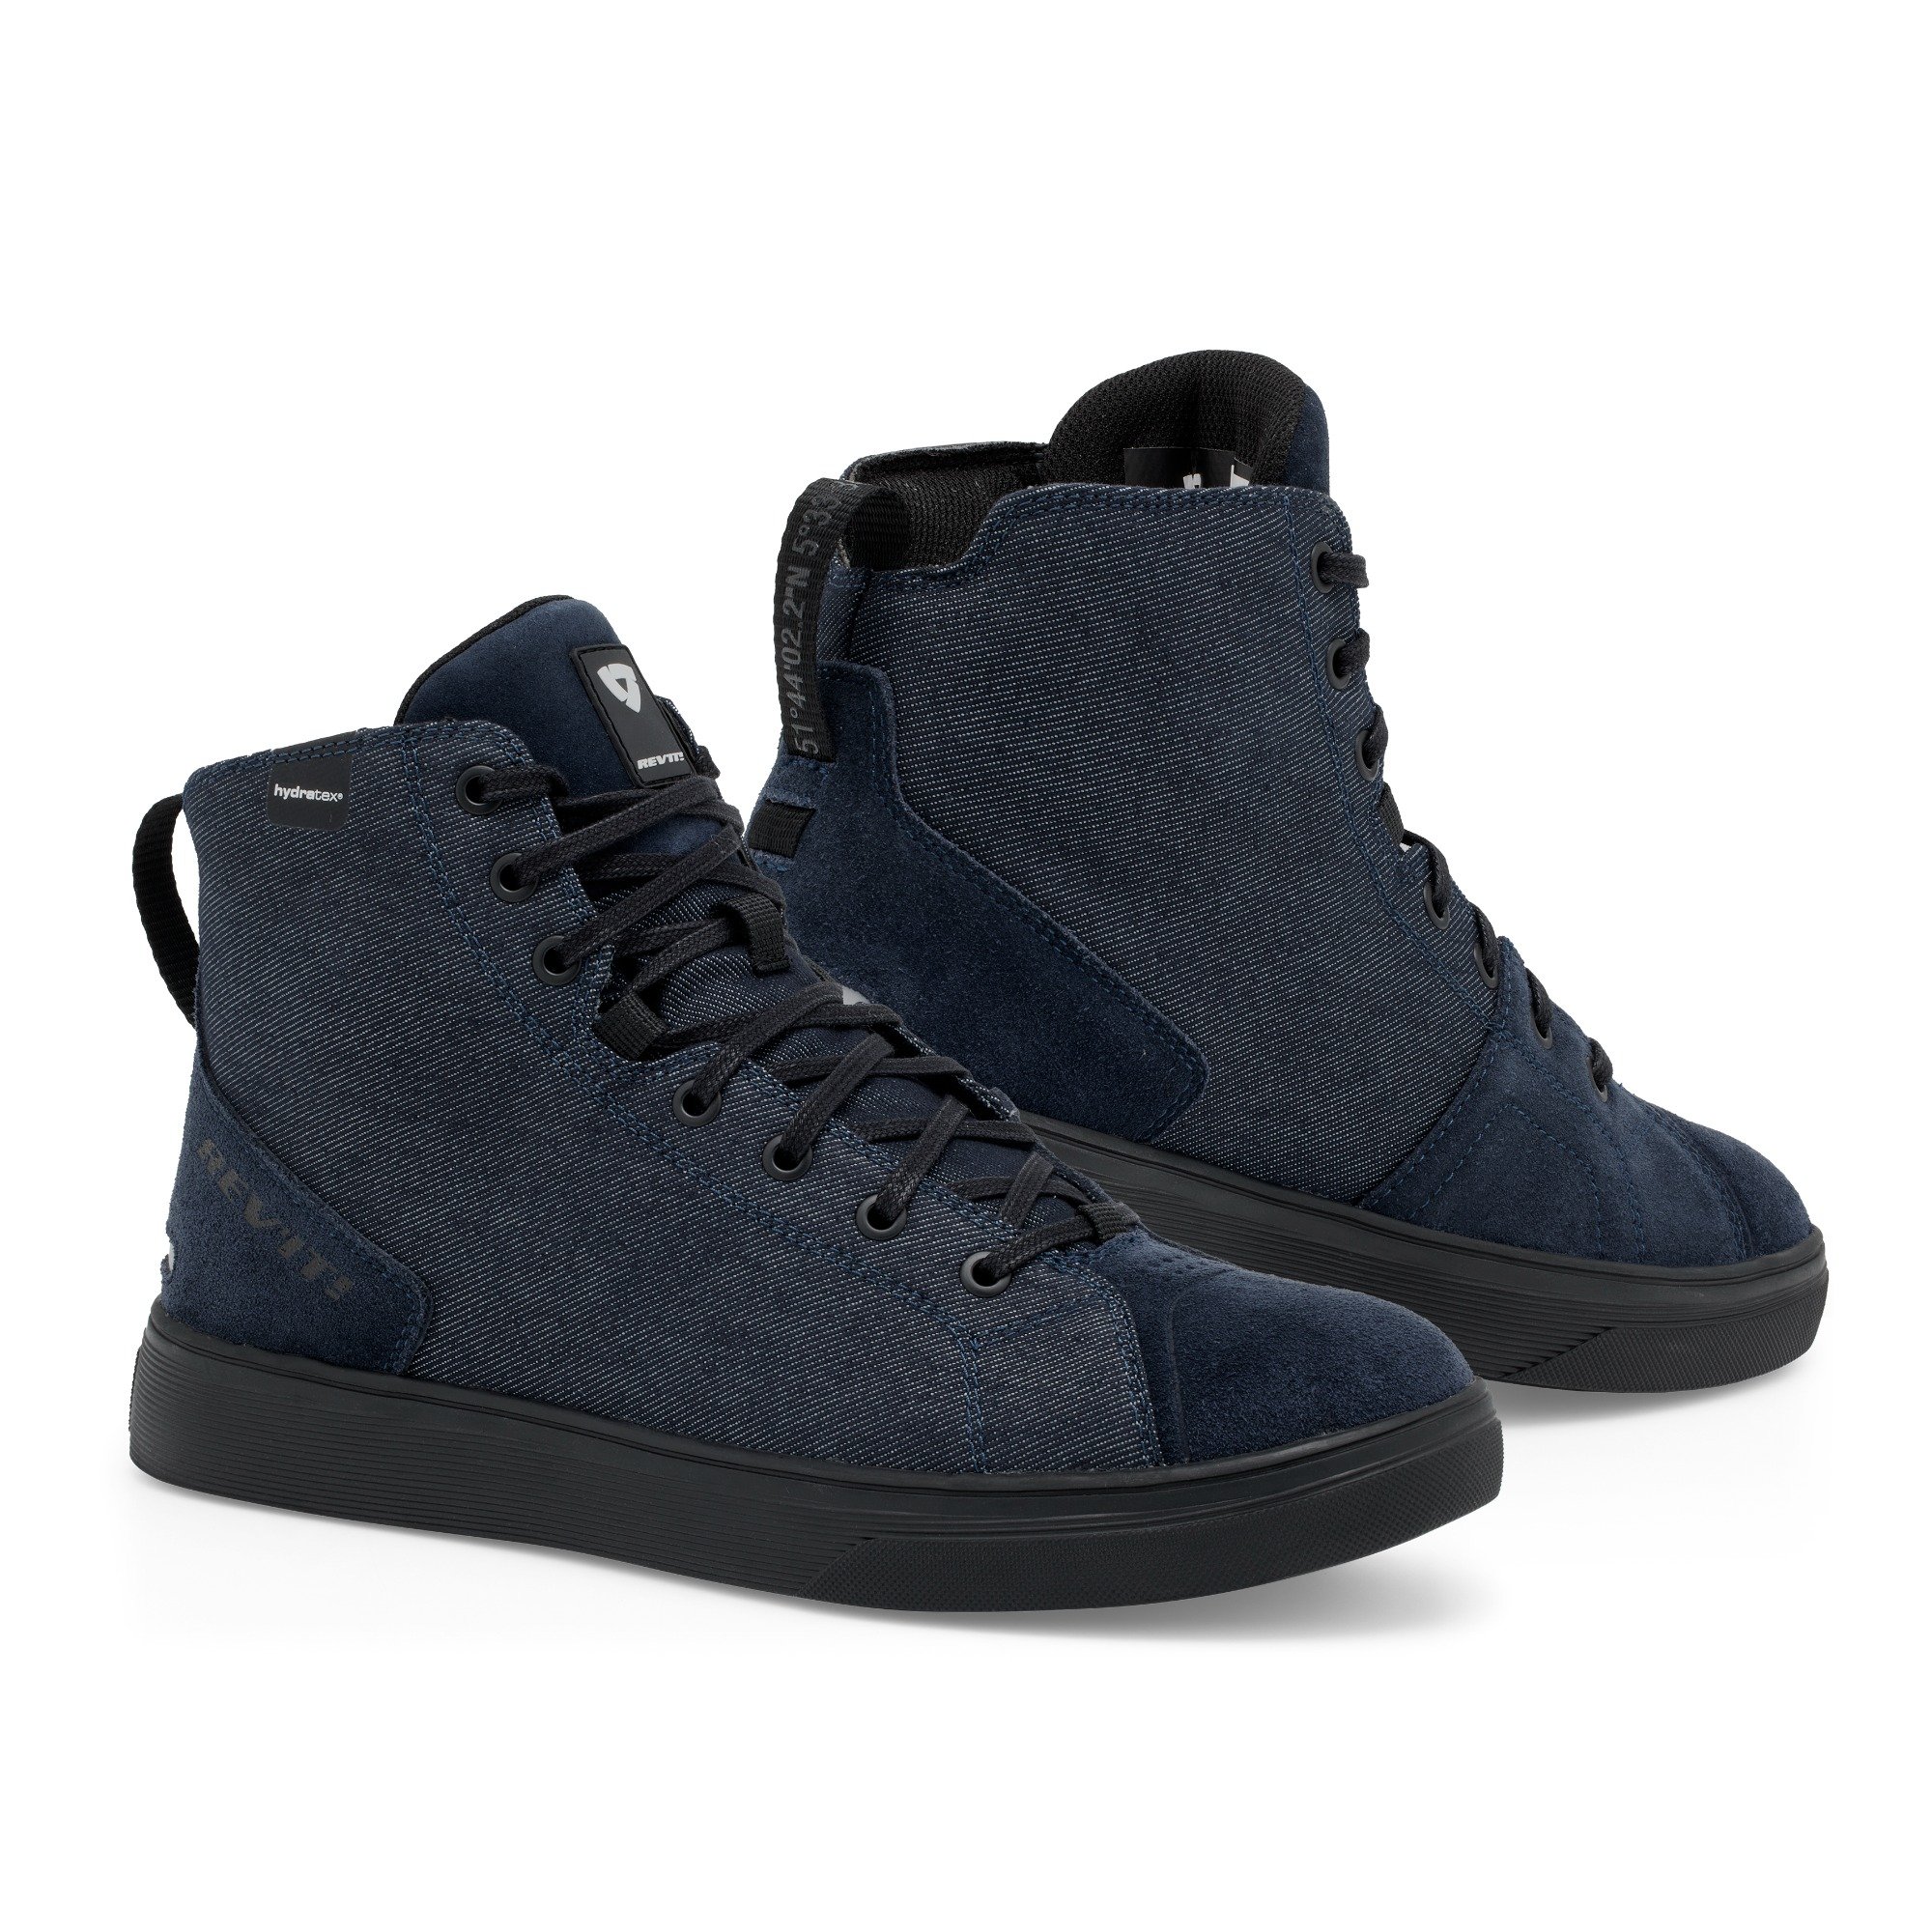 Image of REV'IT! Delta H2O Zapatos Oscuro Azul Negro Talla 45